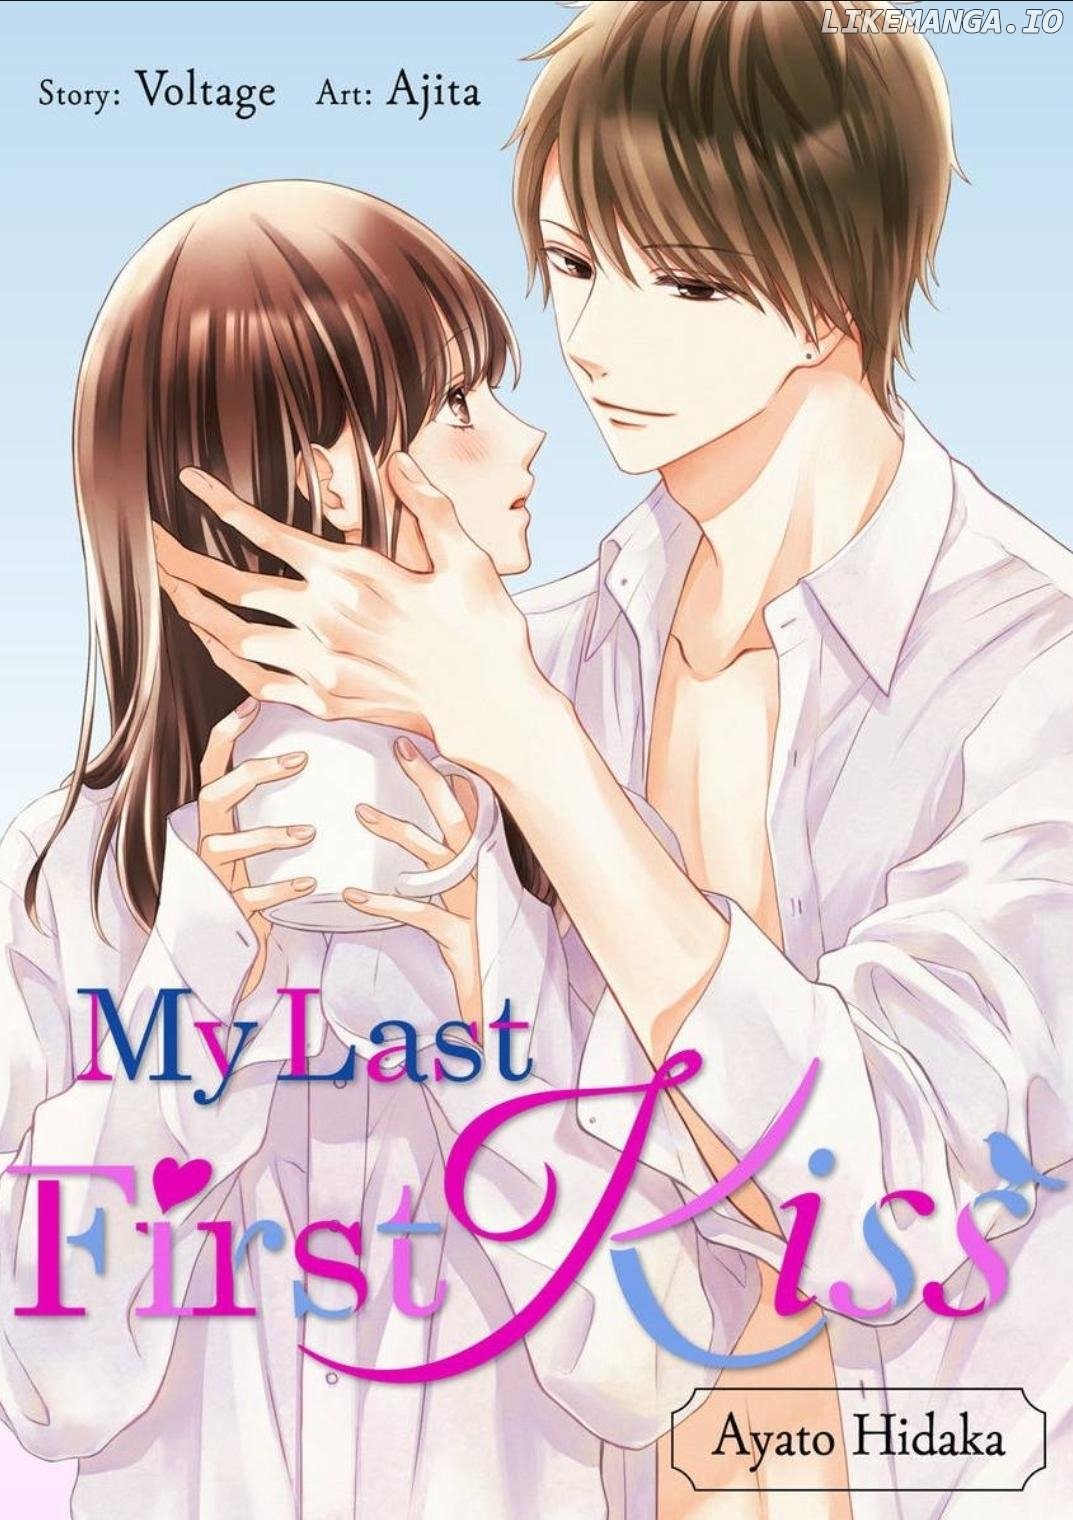 My Last First Kiss: Ayato Hidaka Chapter 12 - page 1